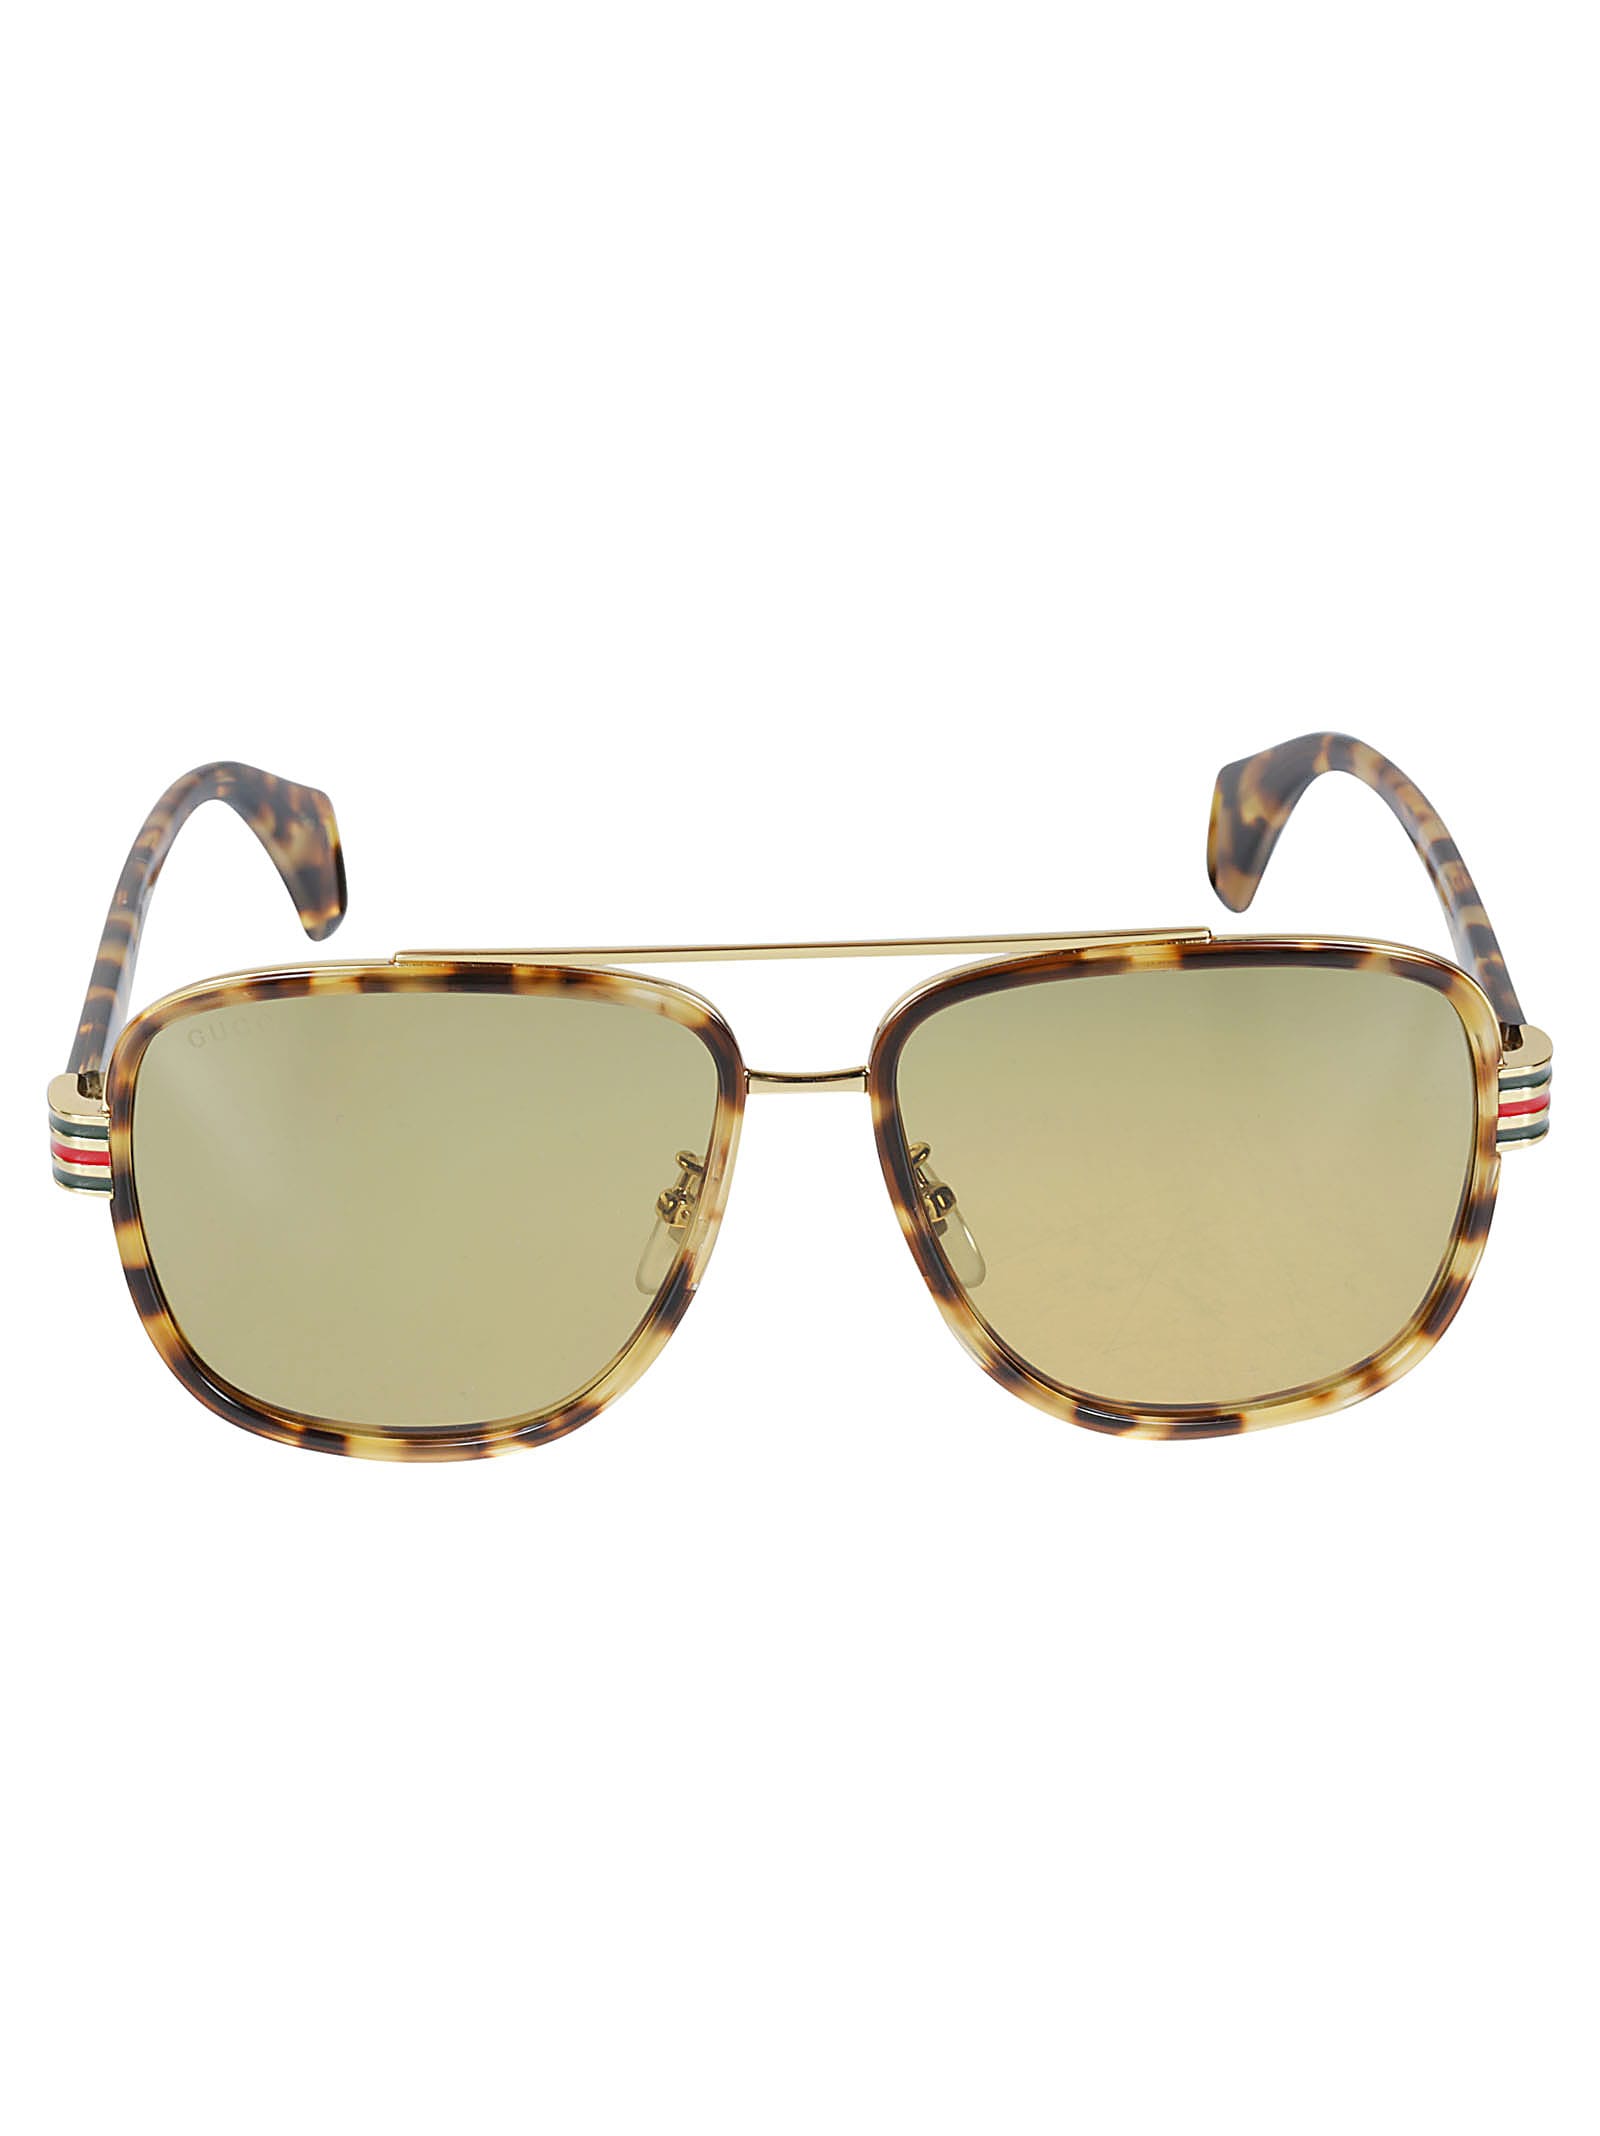 Gucci Square Bridge Detail Sunglasses